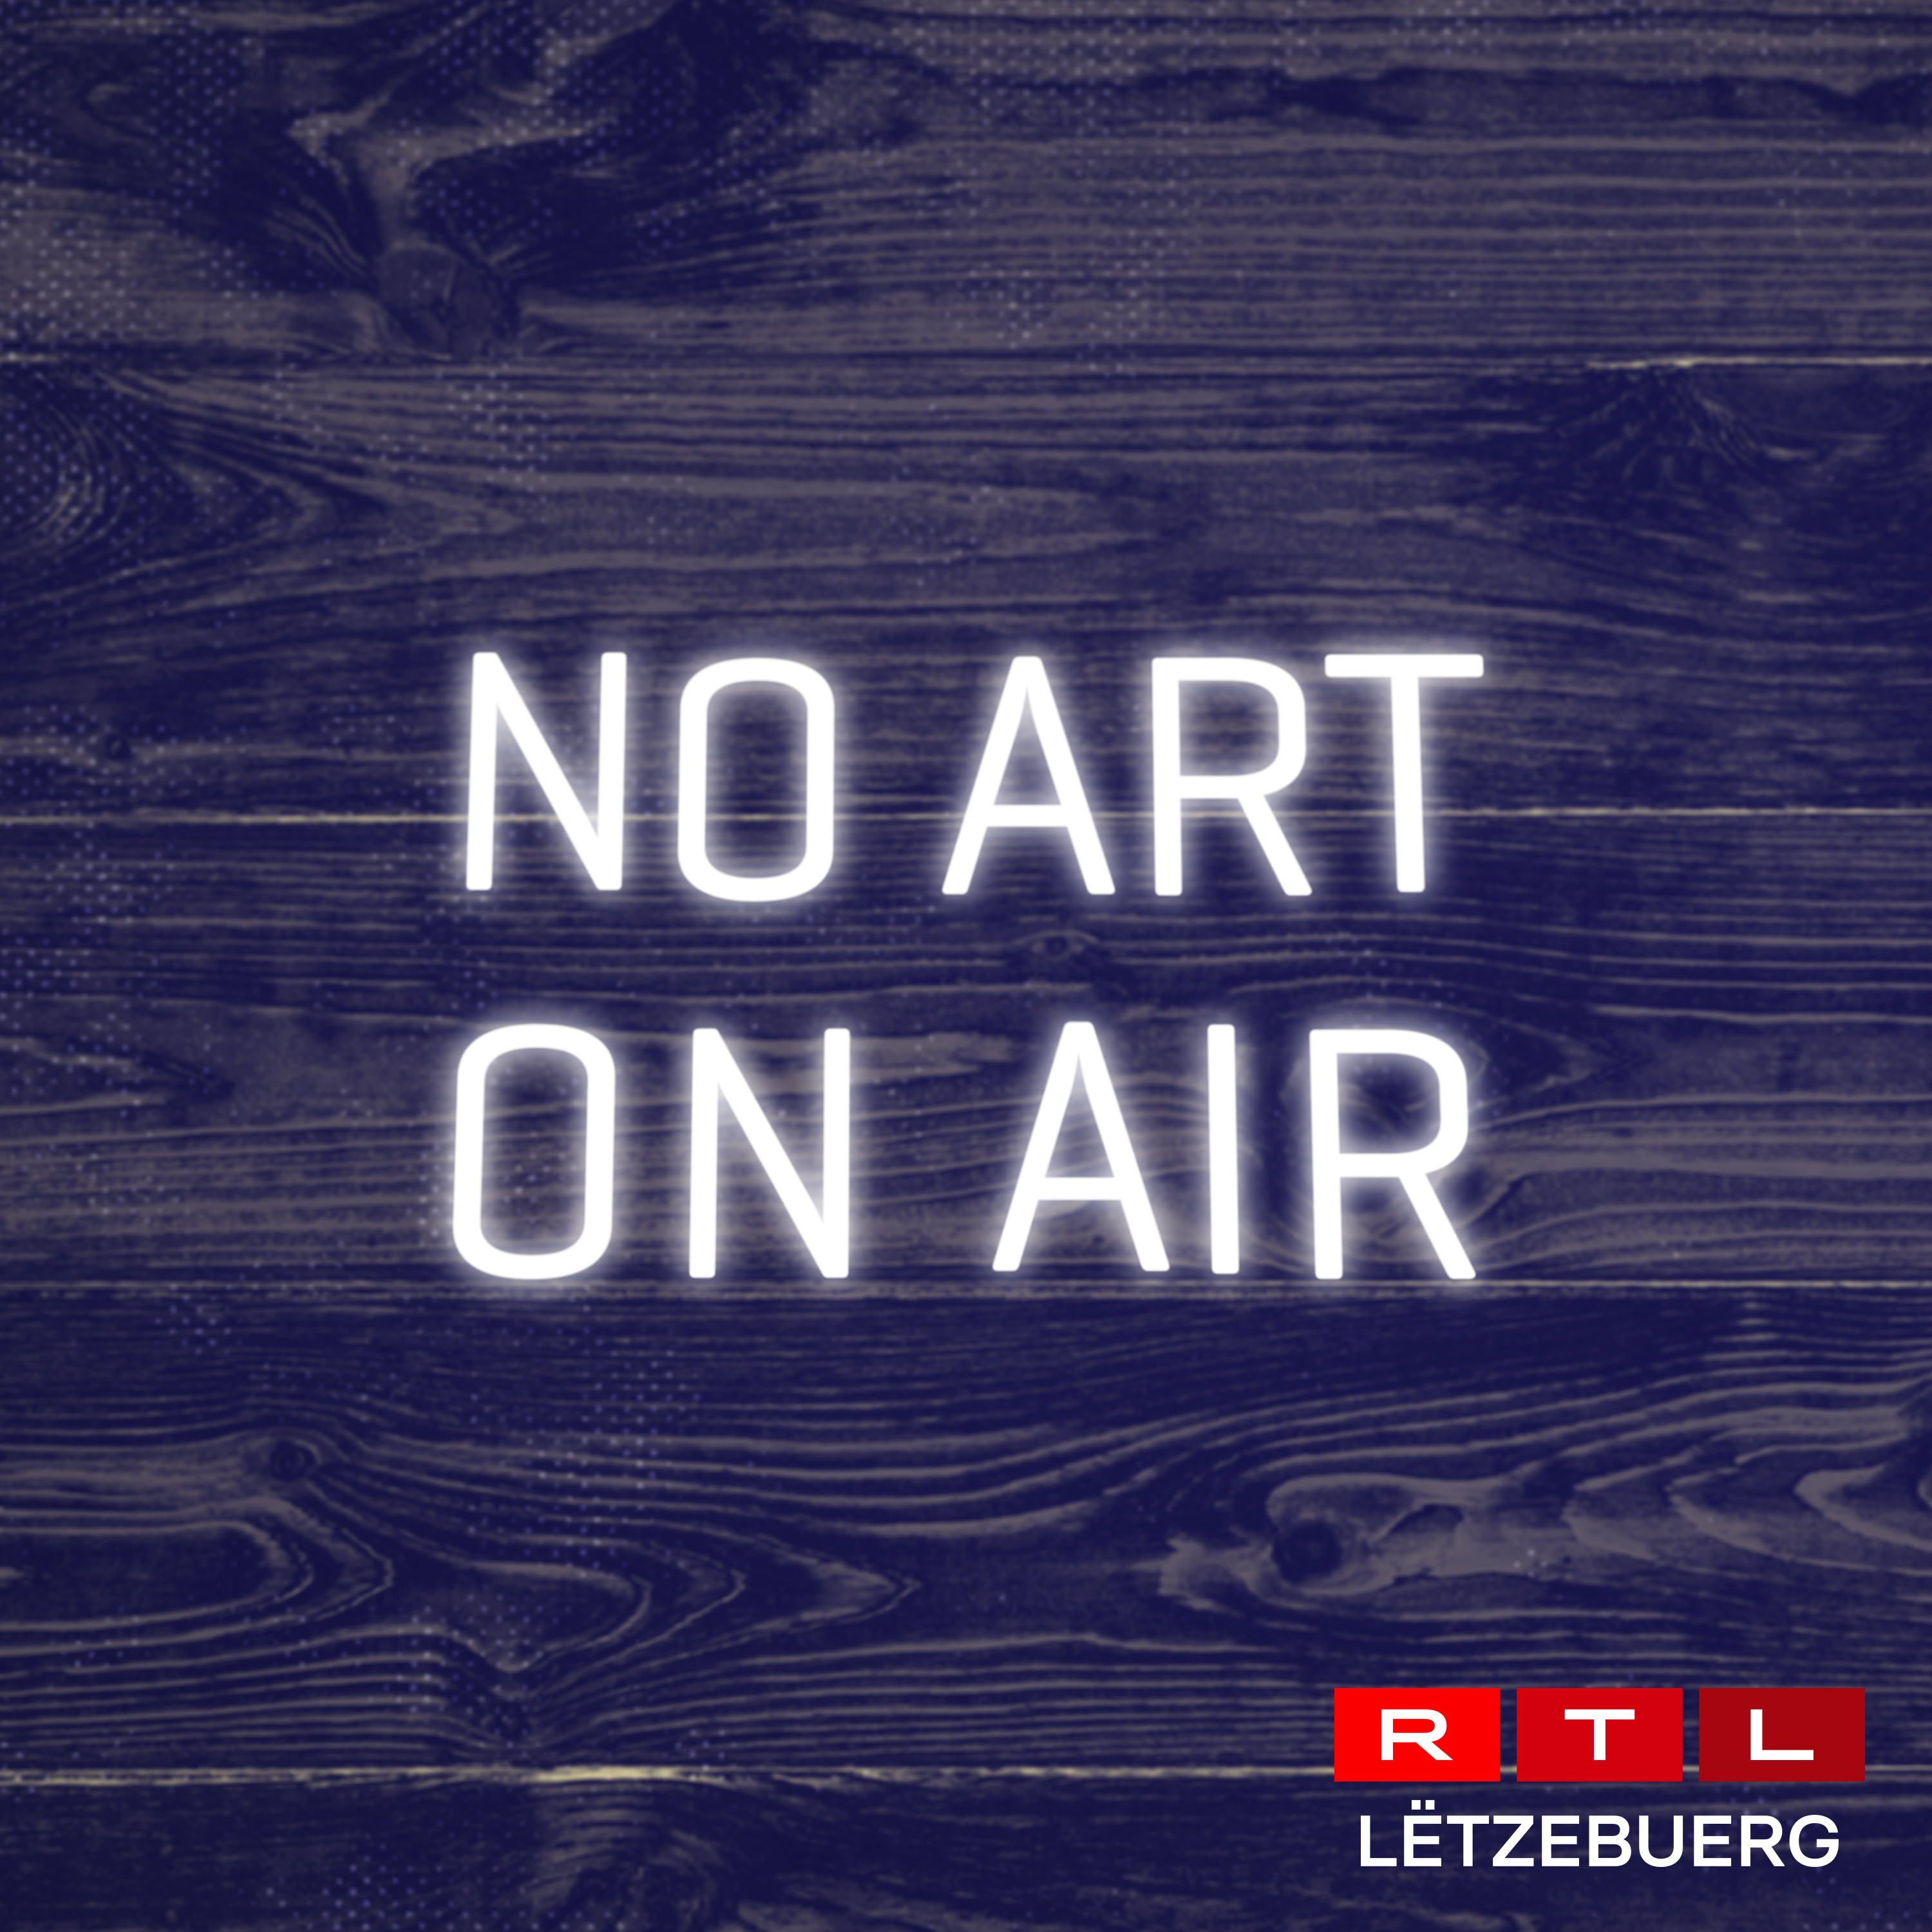 News of Reuter Bausch Art Gallery No ART on AIR